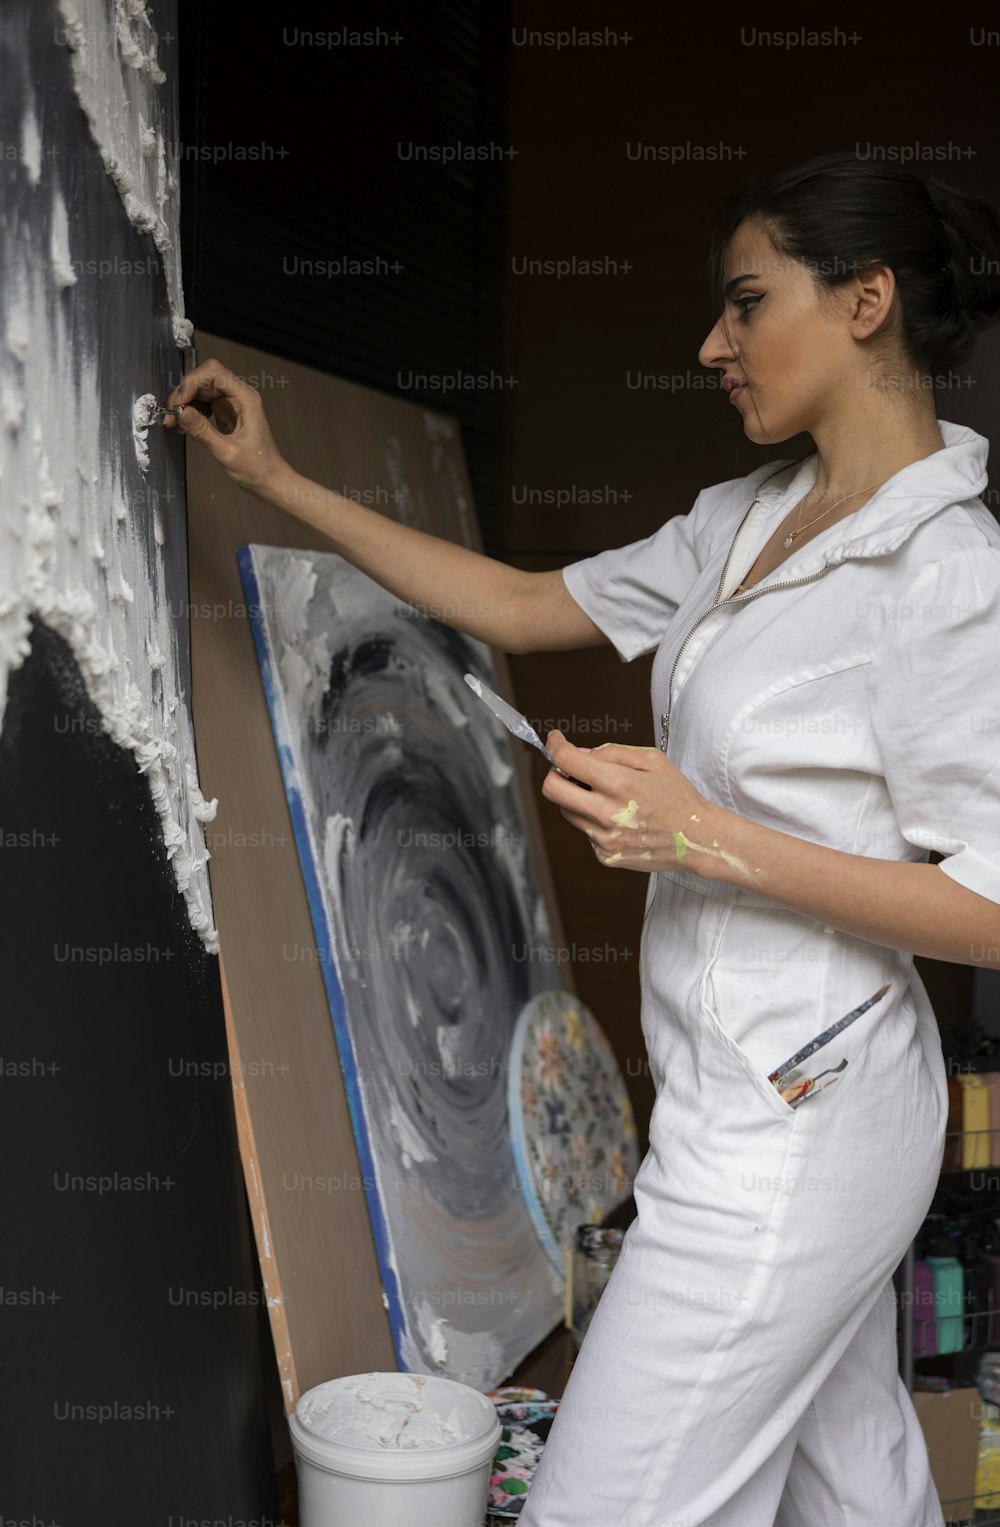 Una mujer está pintando un cuadro en un lienzo